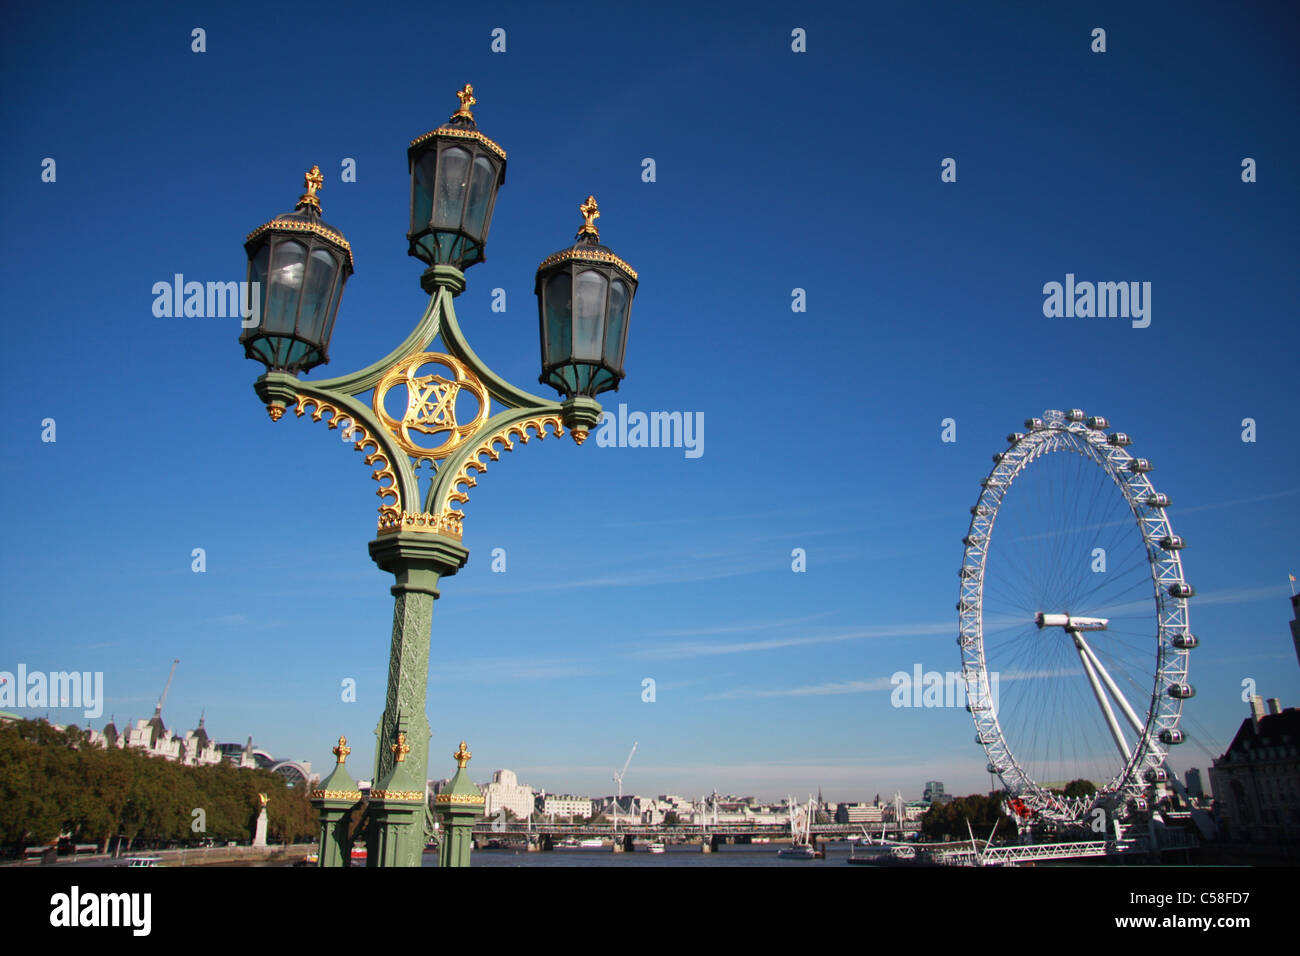 Gran Bretagna, Inghilterra, UK, Regno Unito, Londra, viaggi, turismo, London Eye, Big Wheel, landmark, cabine e gondole, dettaglio, Foto Stock